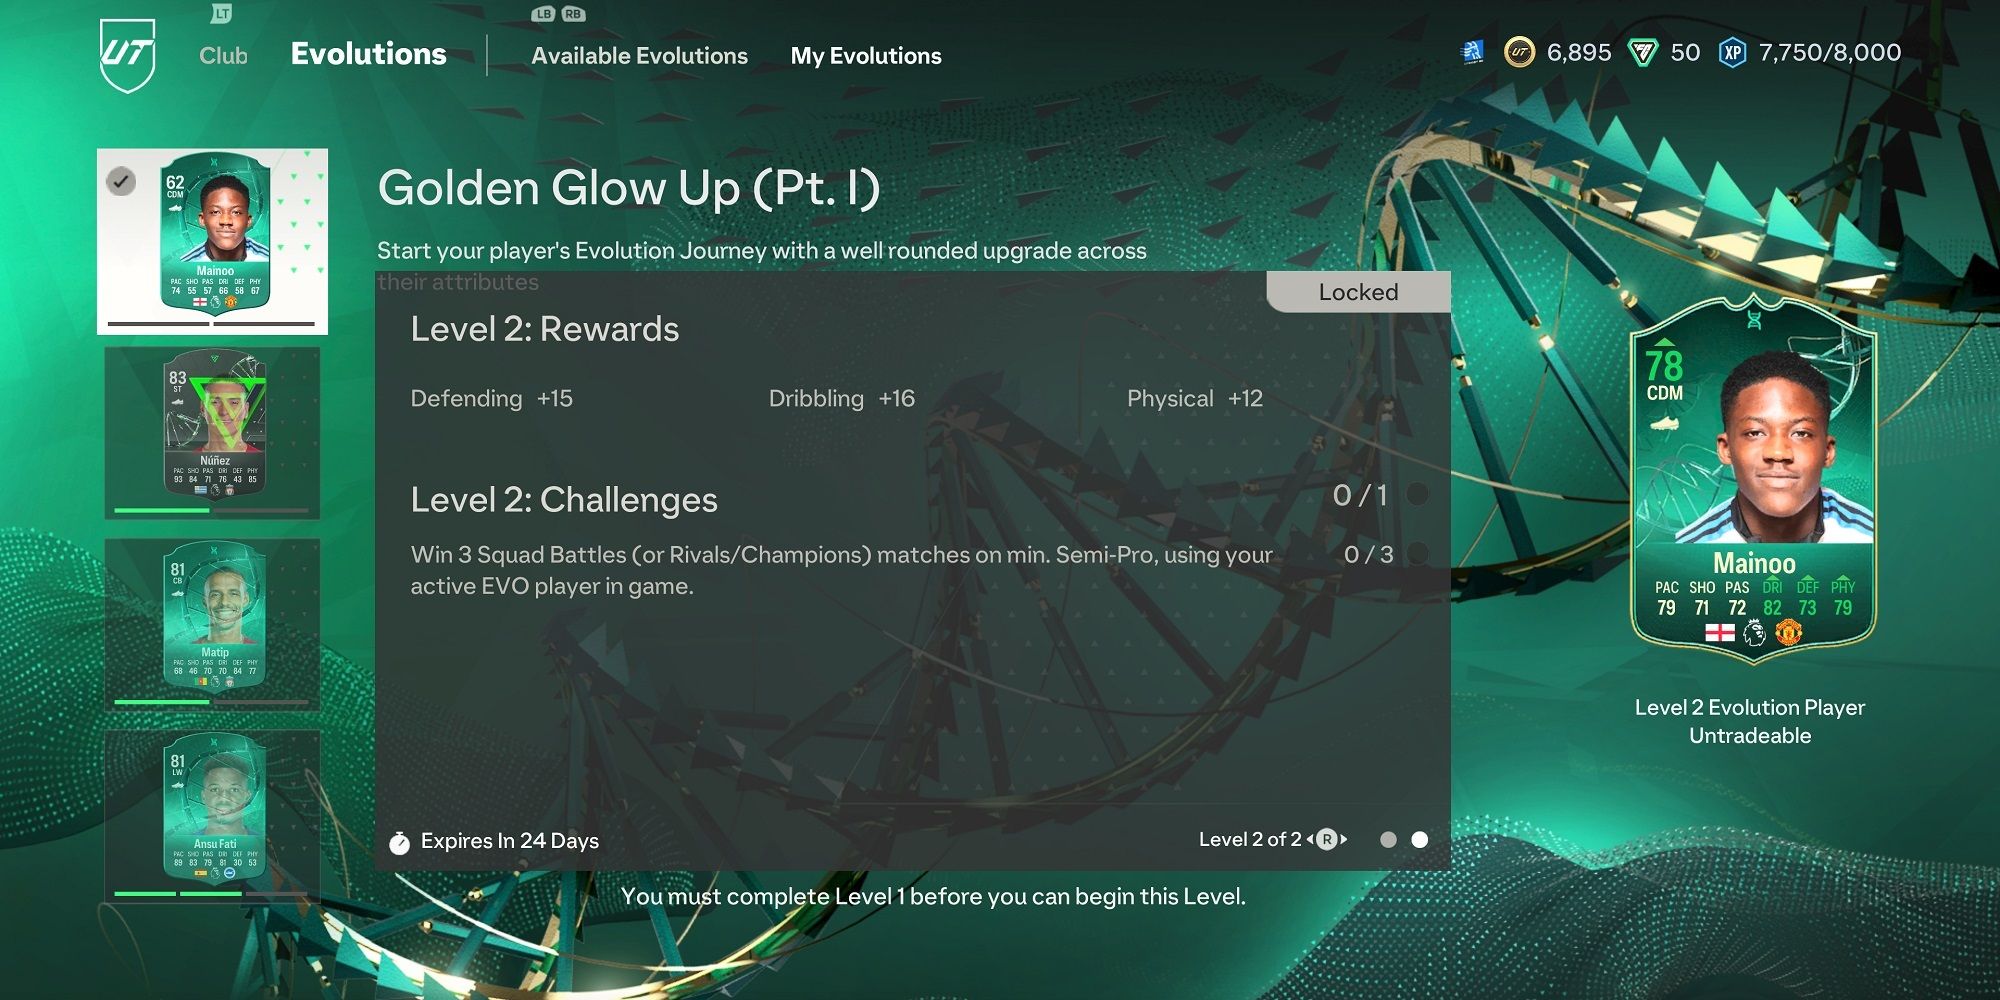 ea_fc_24_golden_glow_up_evolution_mainoo_rewards_and_challenges